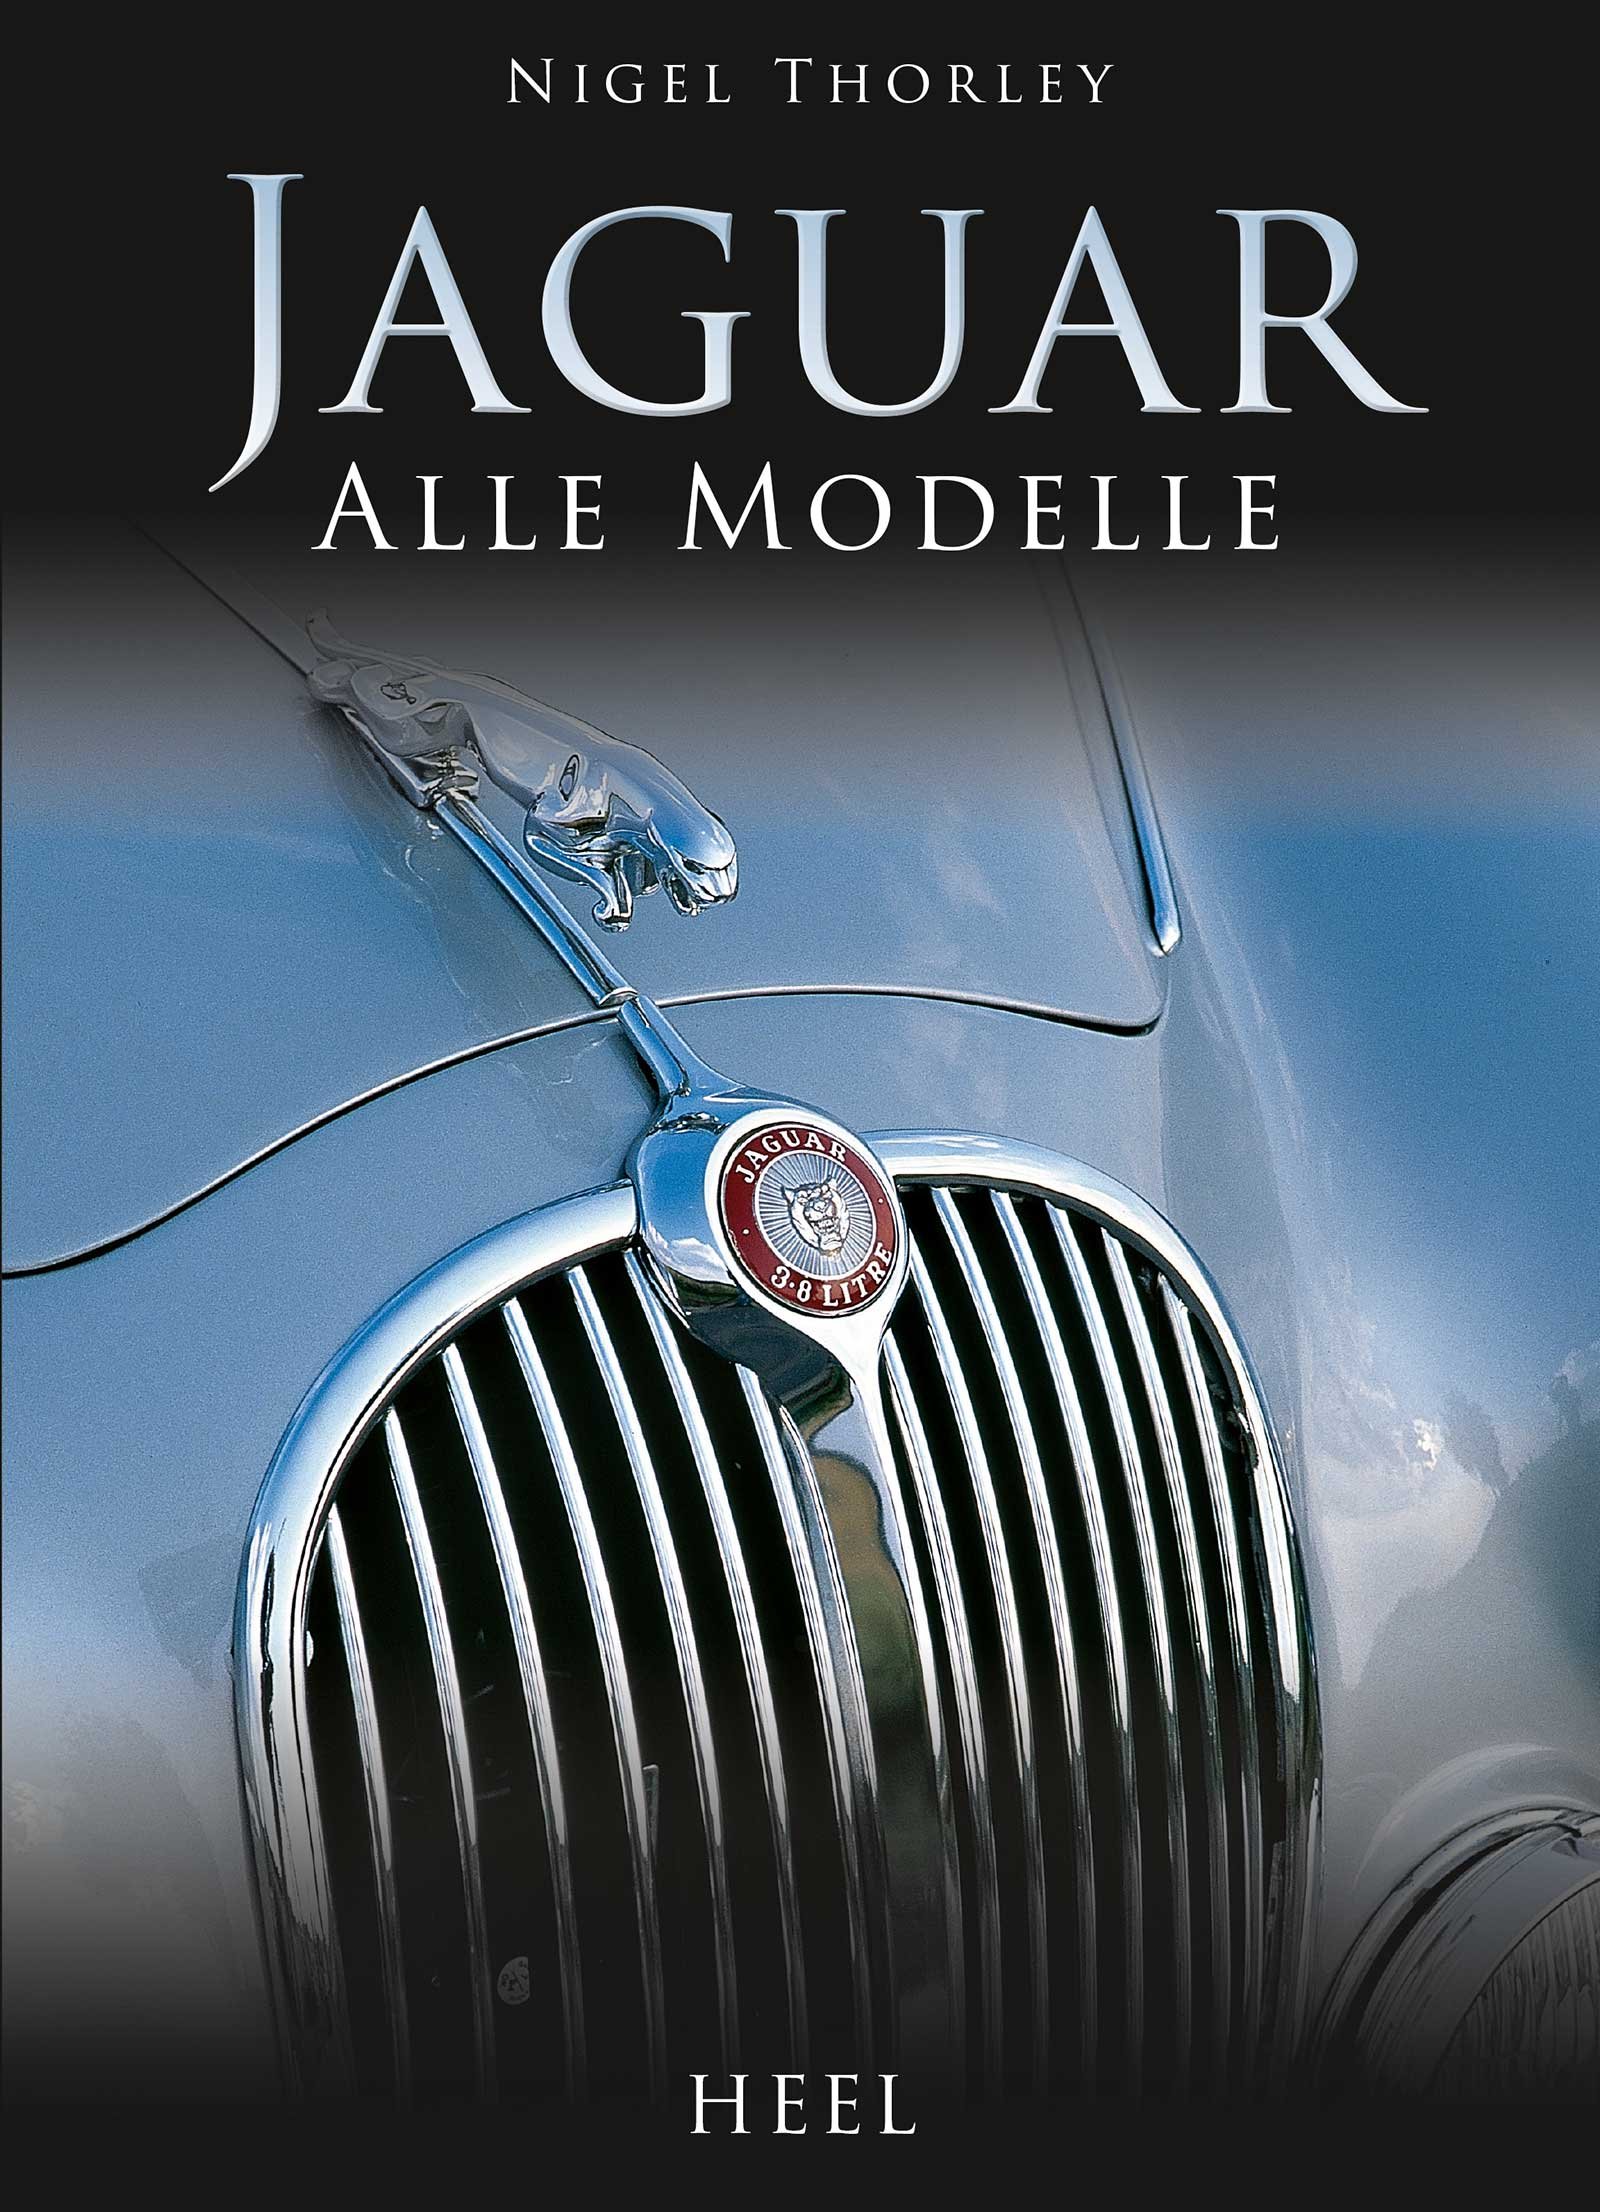 Jaguar Alle Modelle Nigel Thorley Disch